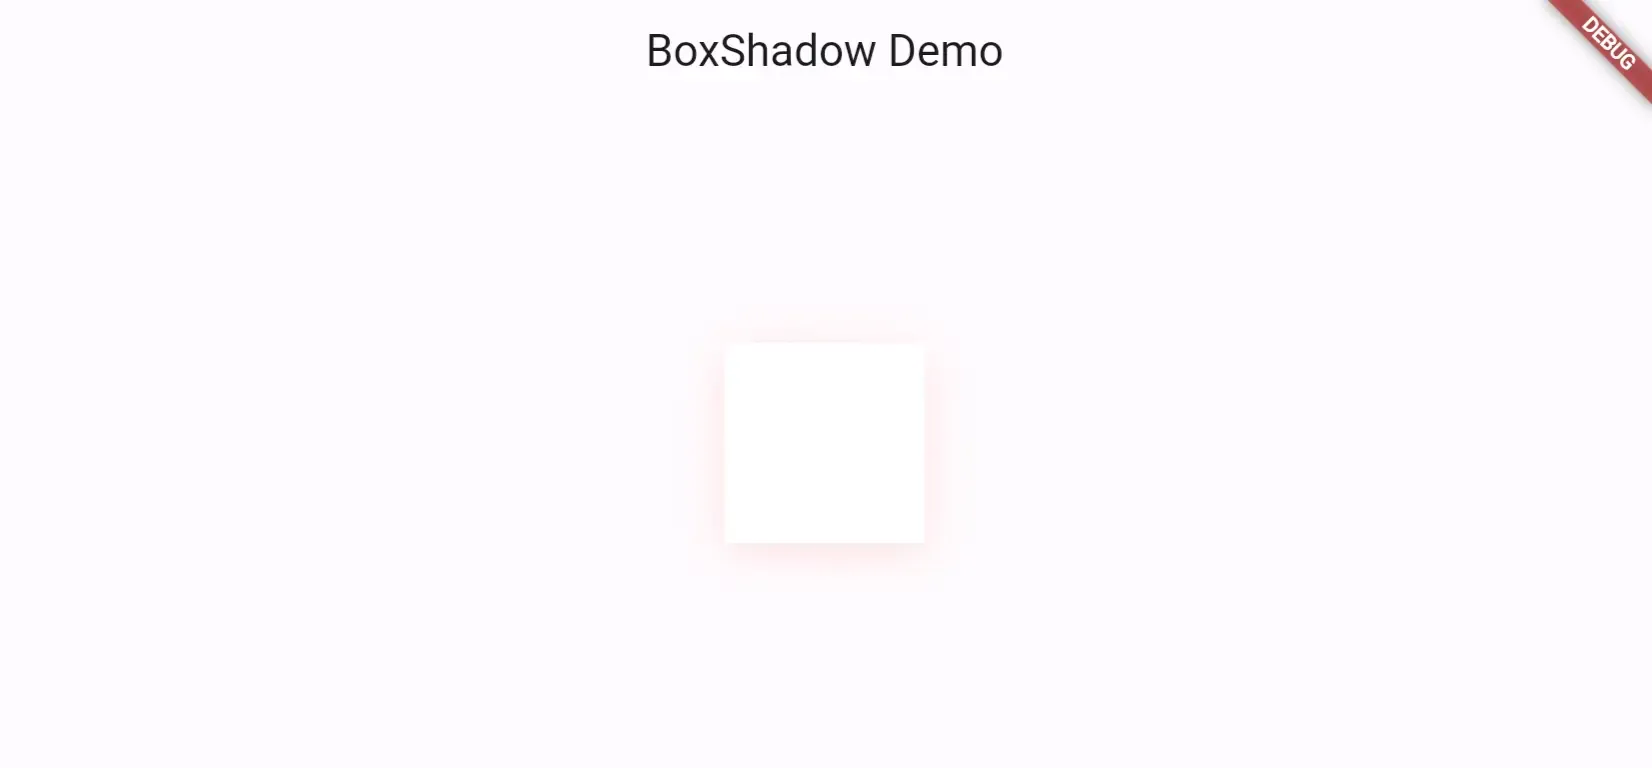 Adding a Simple Box Shadow